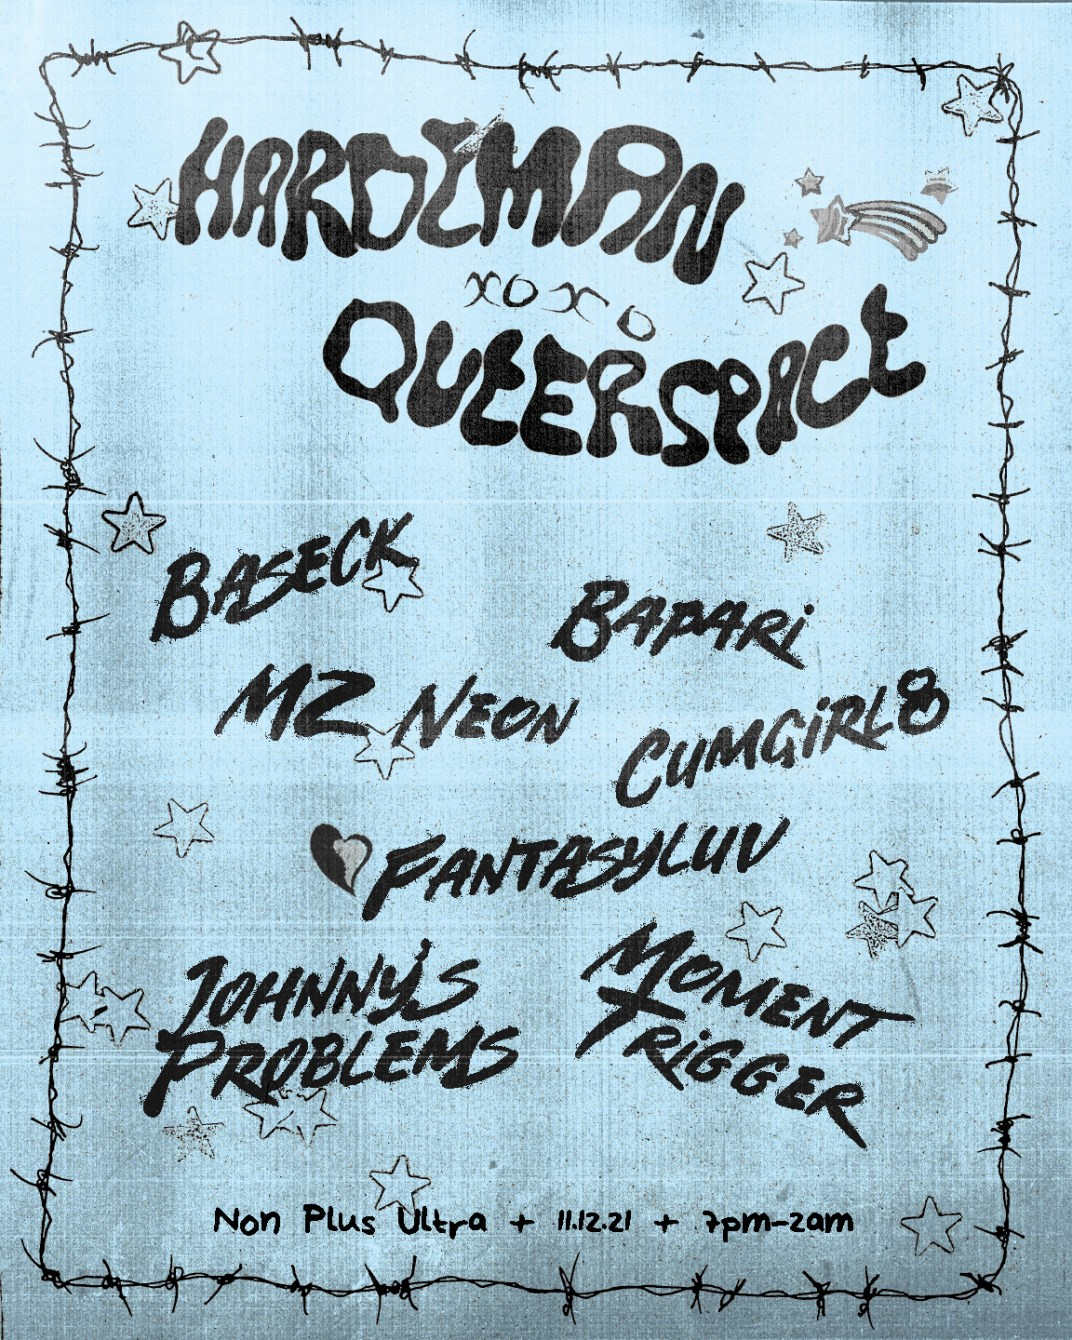 Queerspace x Hardeman - Flyer front